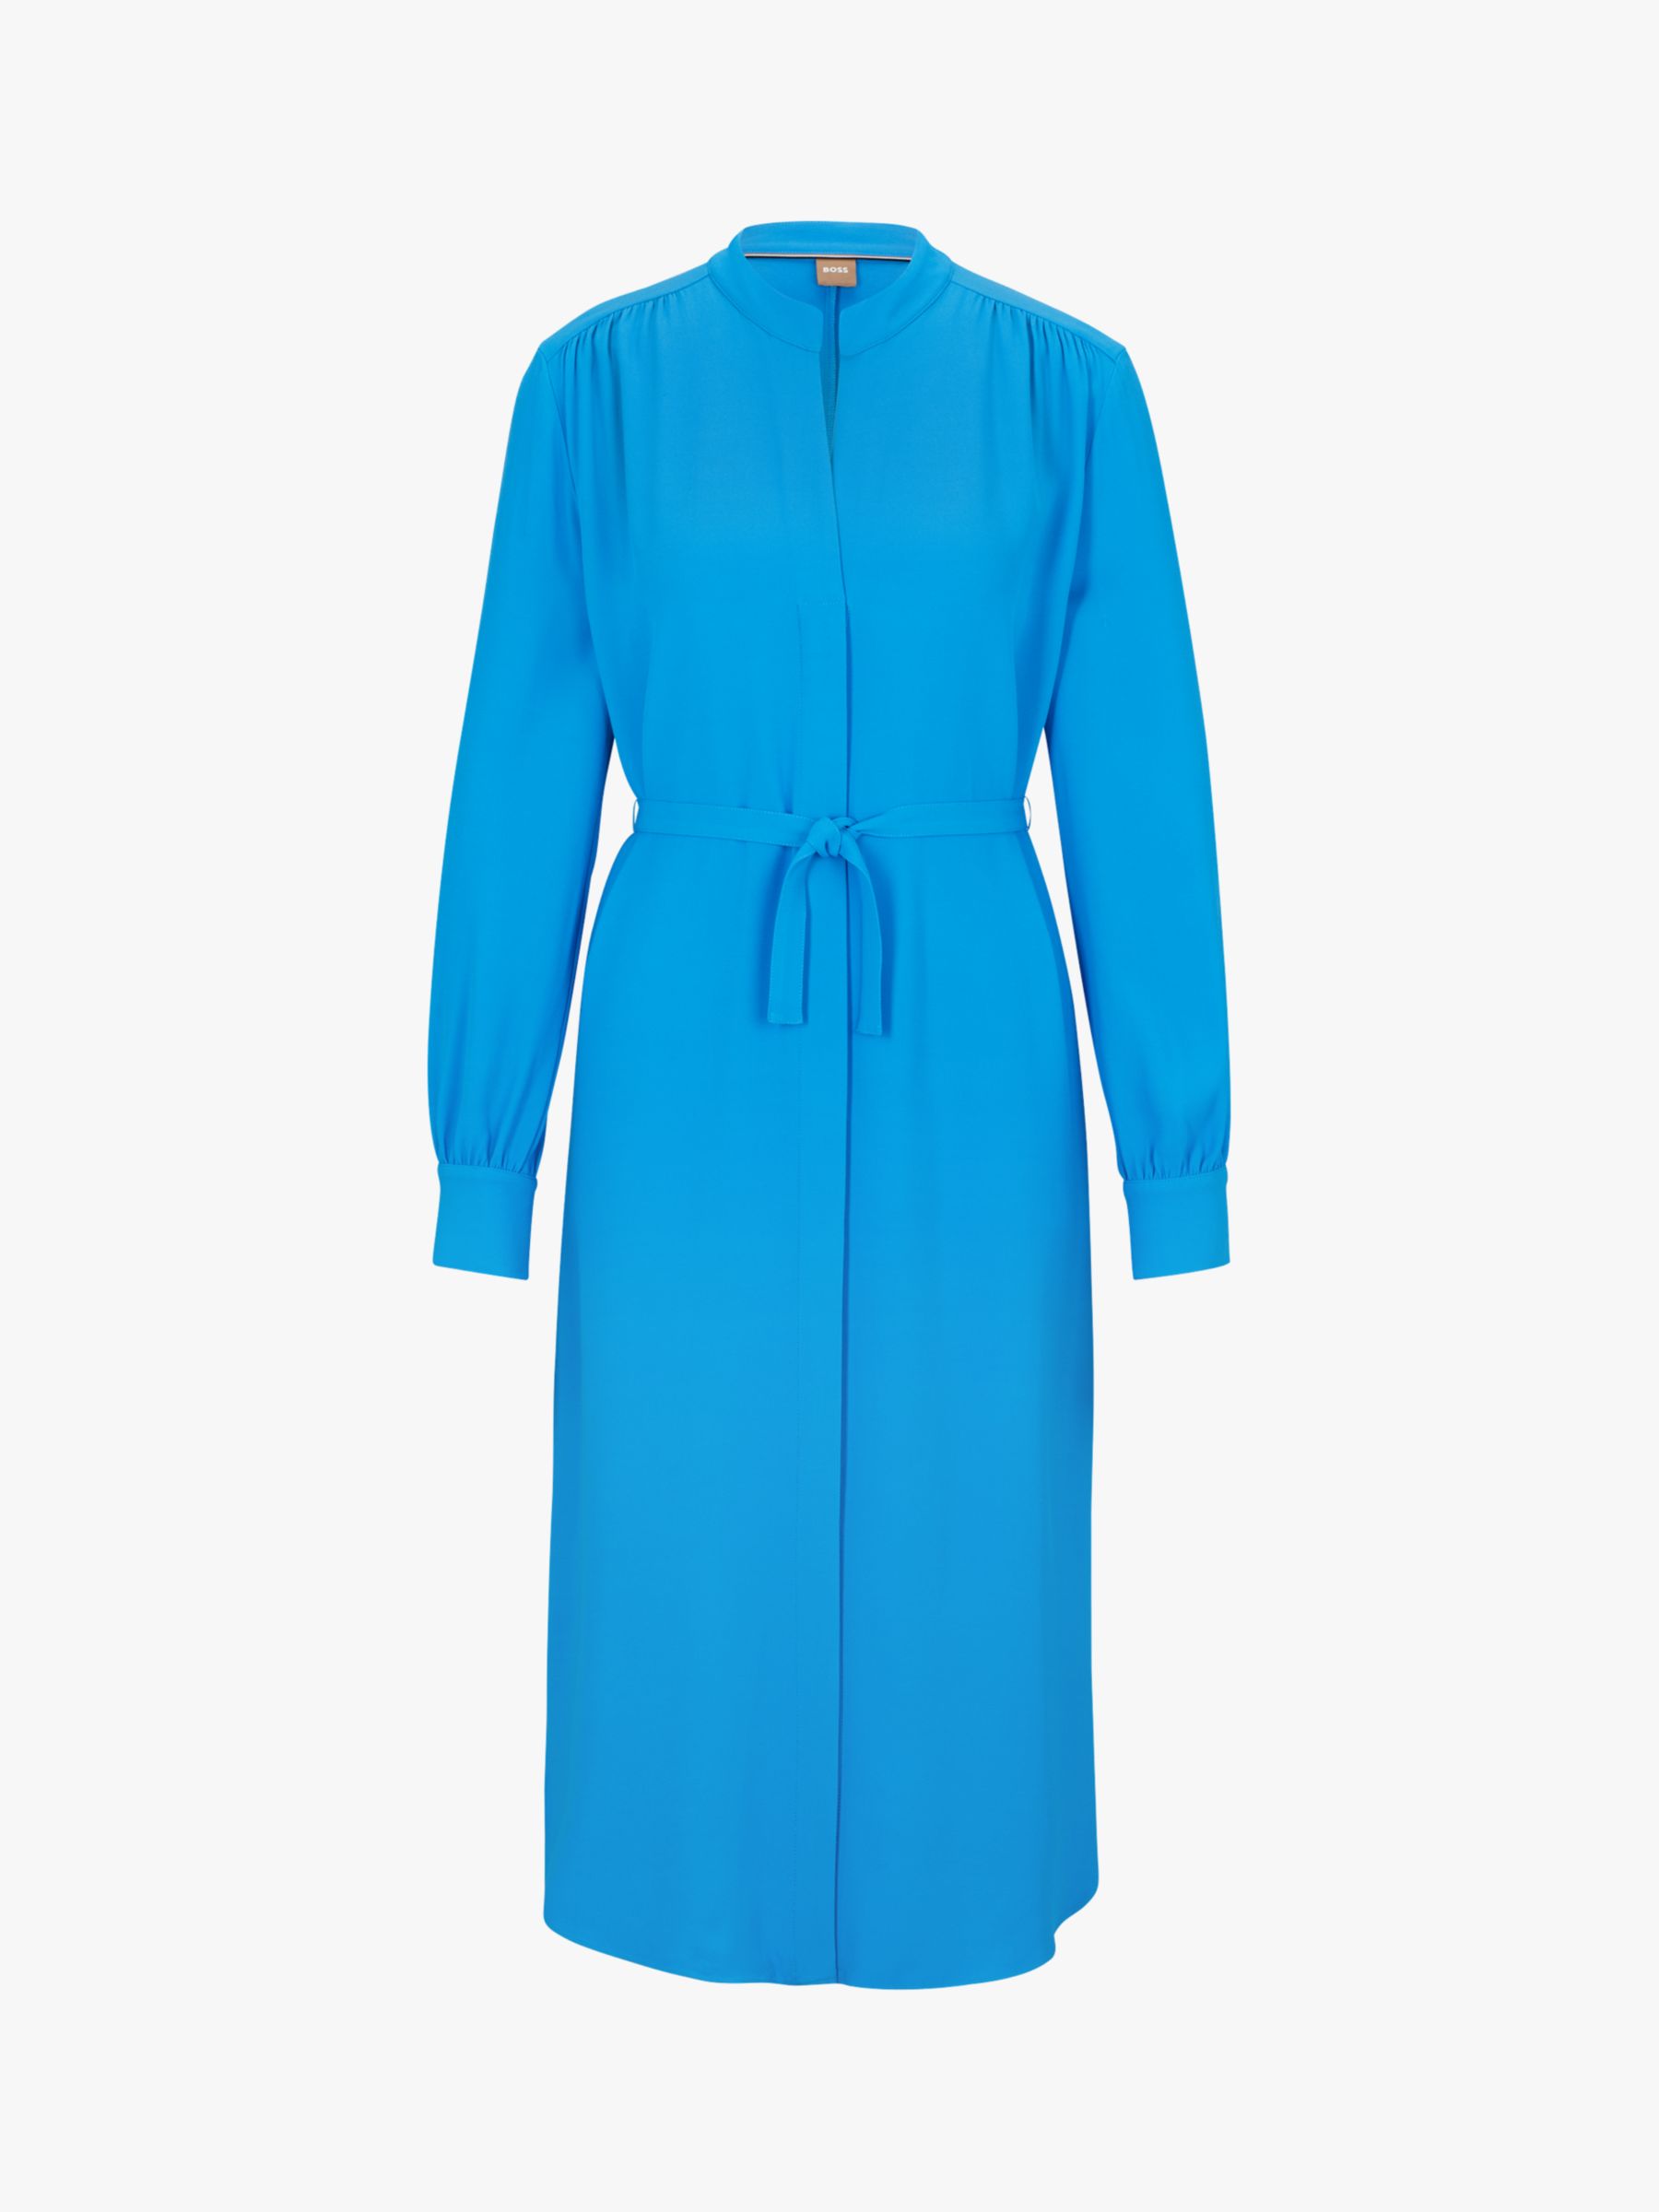 HUGO BOSS Dibanorah Plain Dress, Bright Blue at John Lewis & Partners